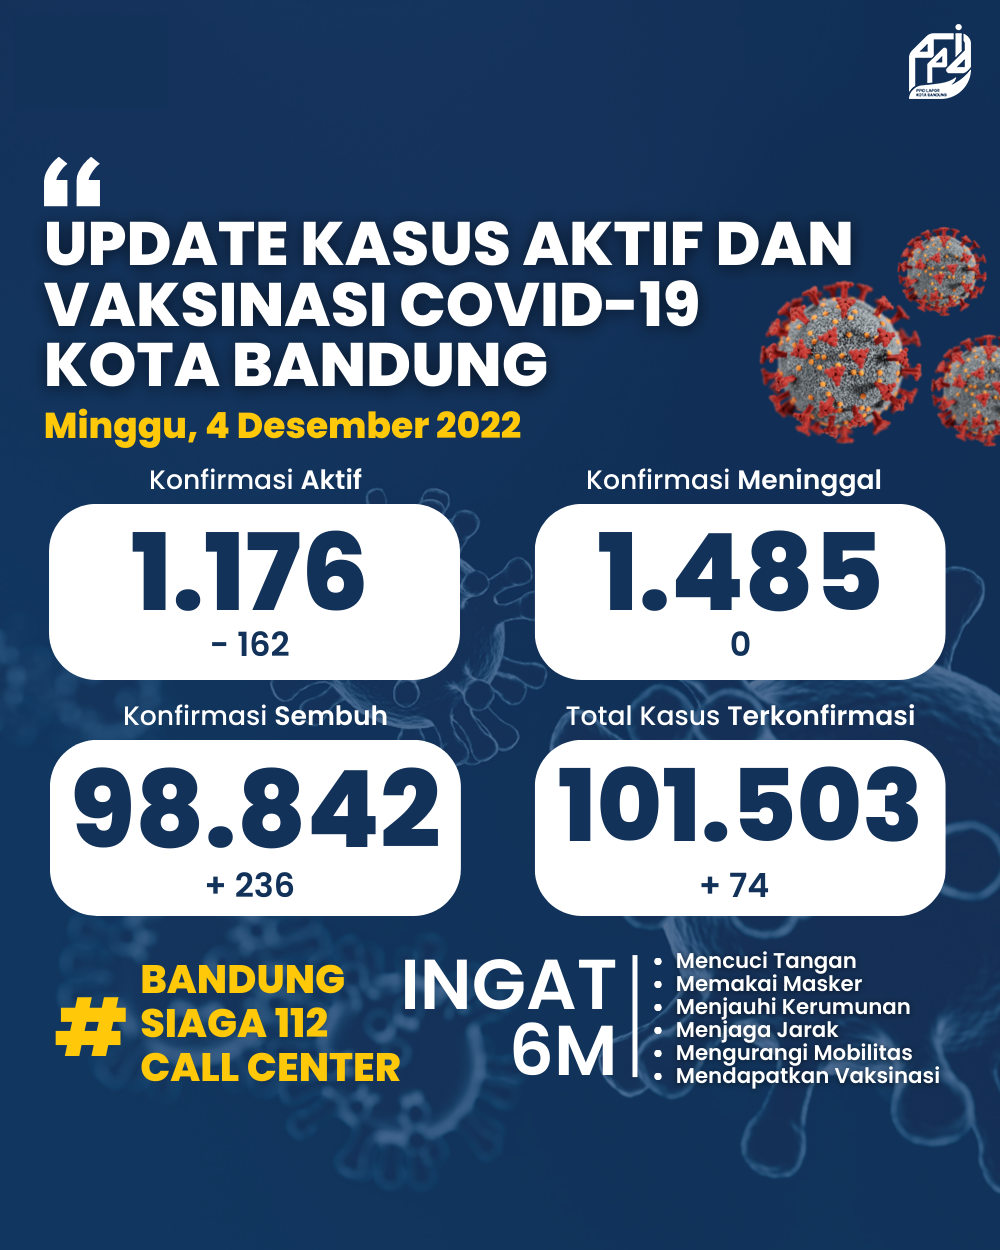 UPDATE STATISTIK COVID-19 DI KOTA BANDUNG PER TANGGAL 4 DESEMBER 2022